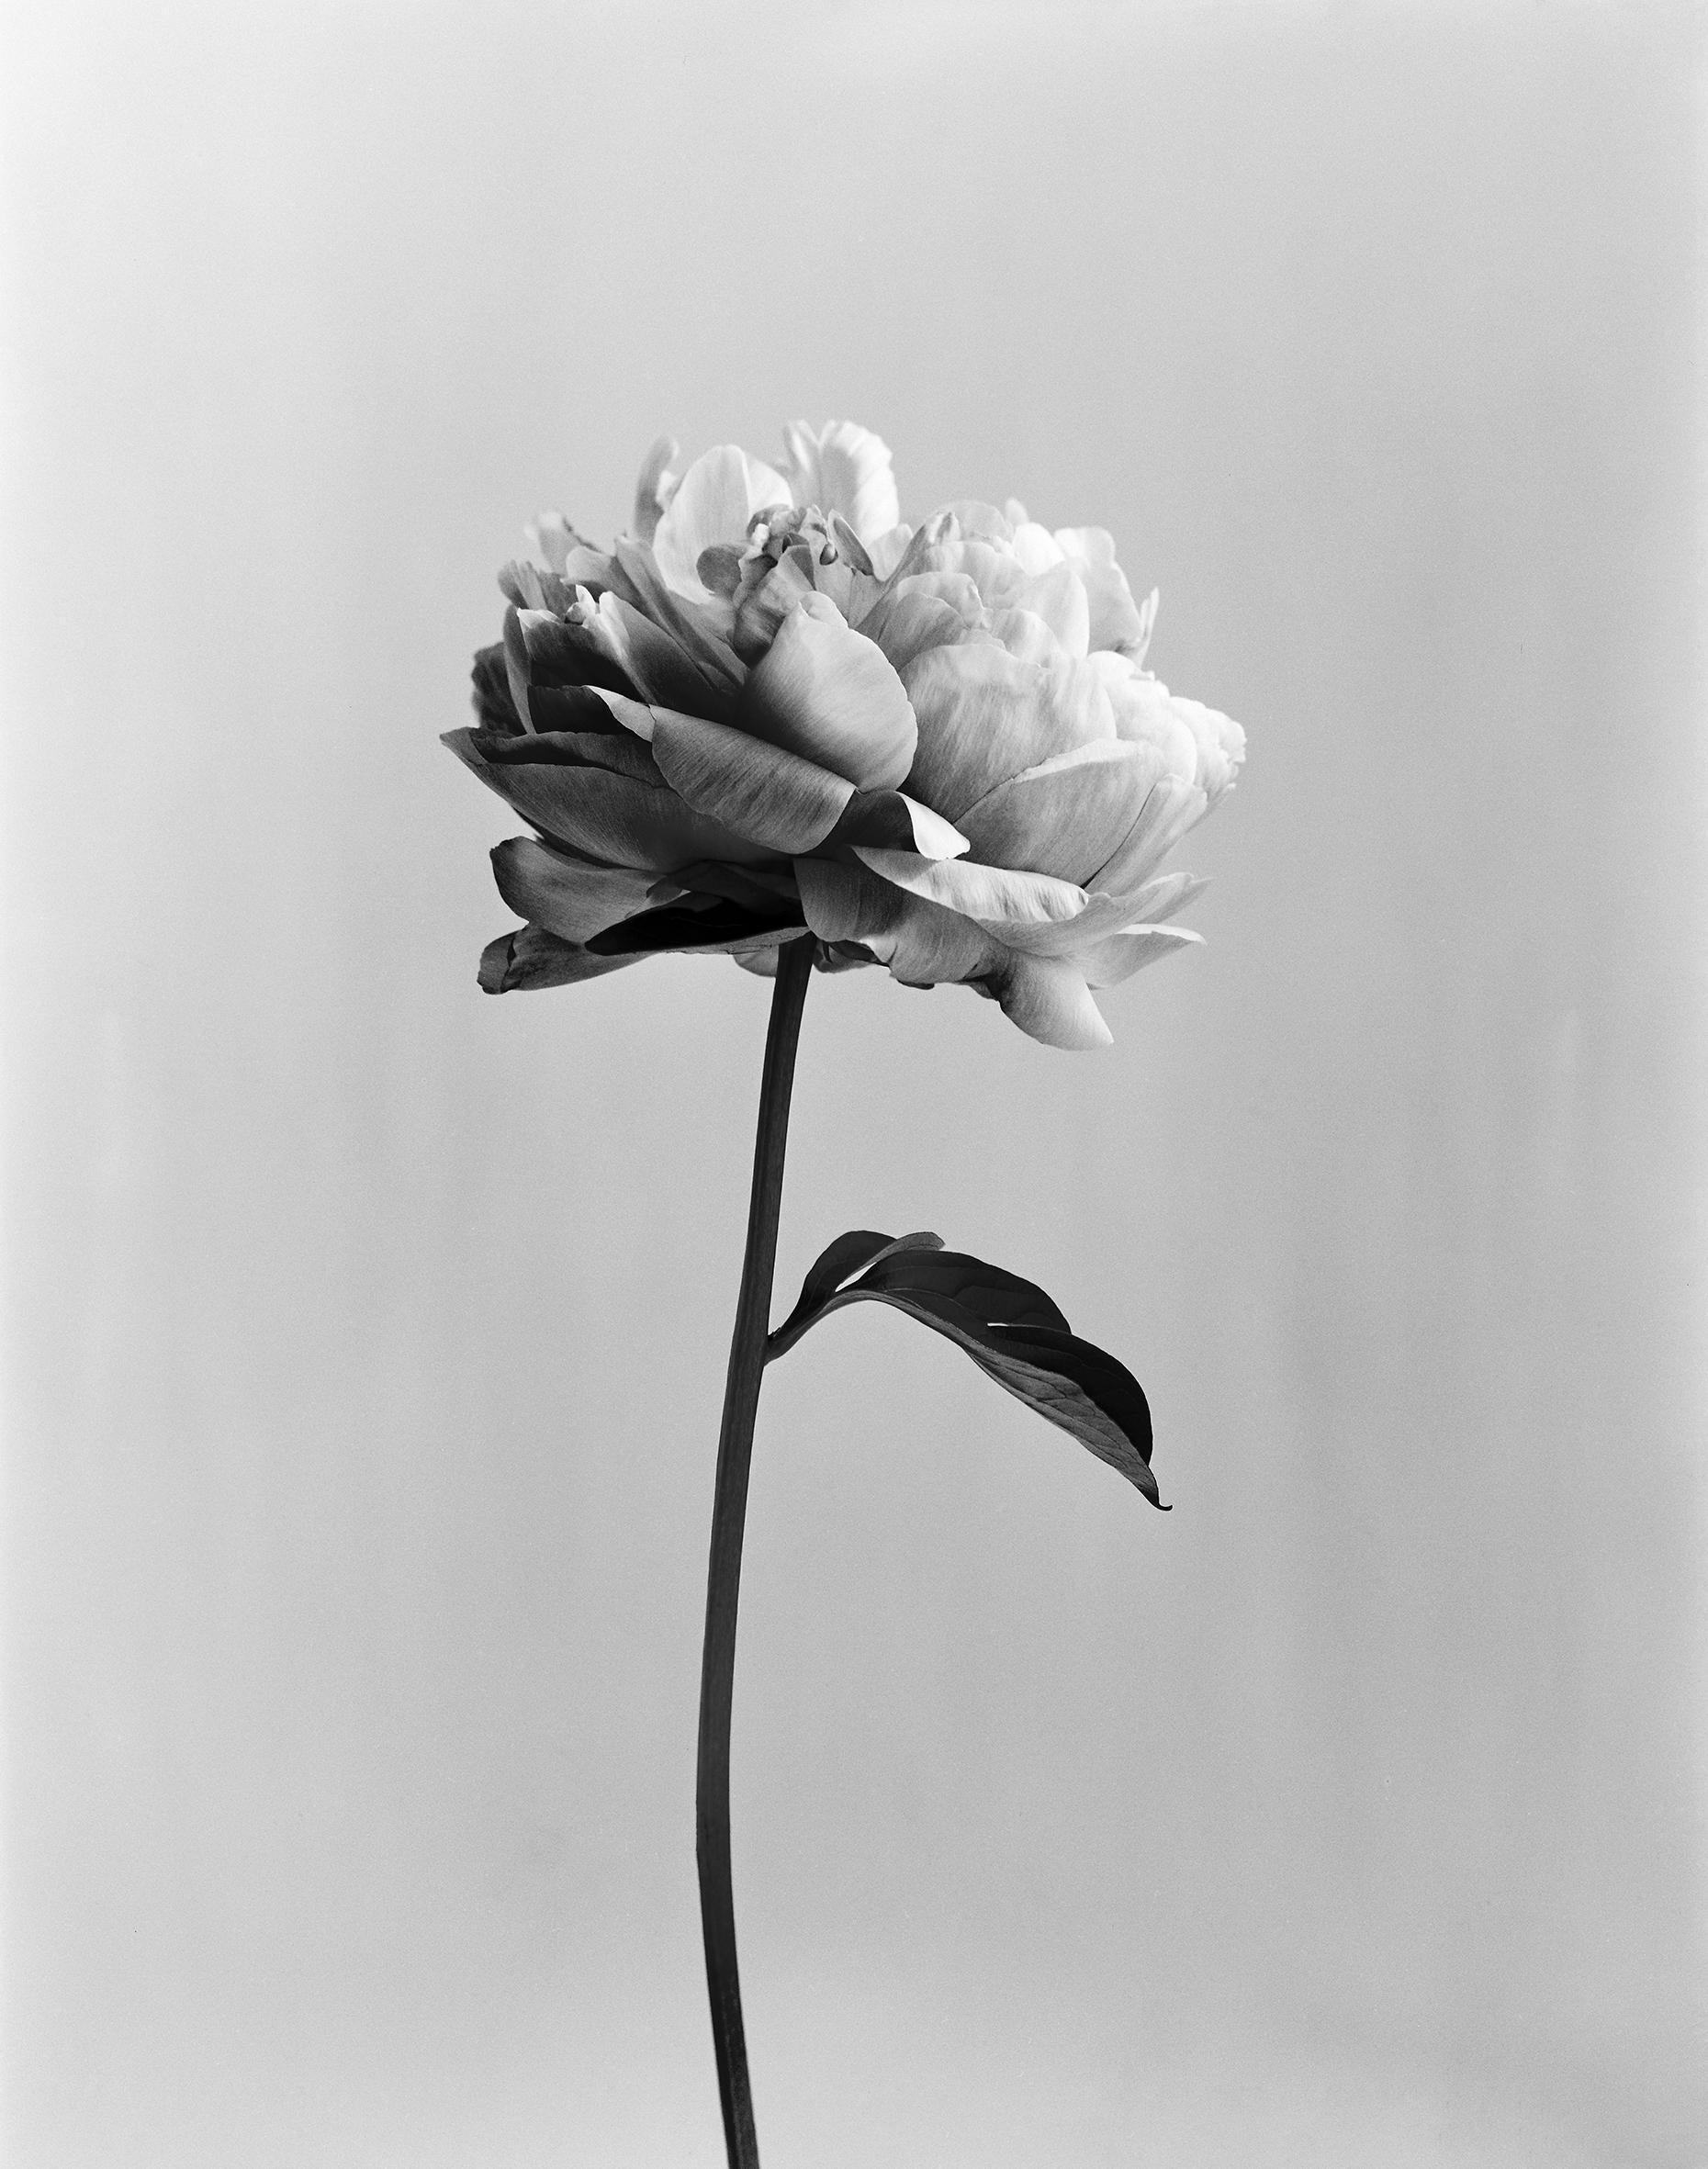 Ugne Pouwell Black and White Photograph – analoge Schwarz-Weiß-Blumenfotografie von Peony No.3, limitierte Auflage 3 von 10 Stück